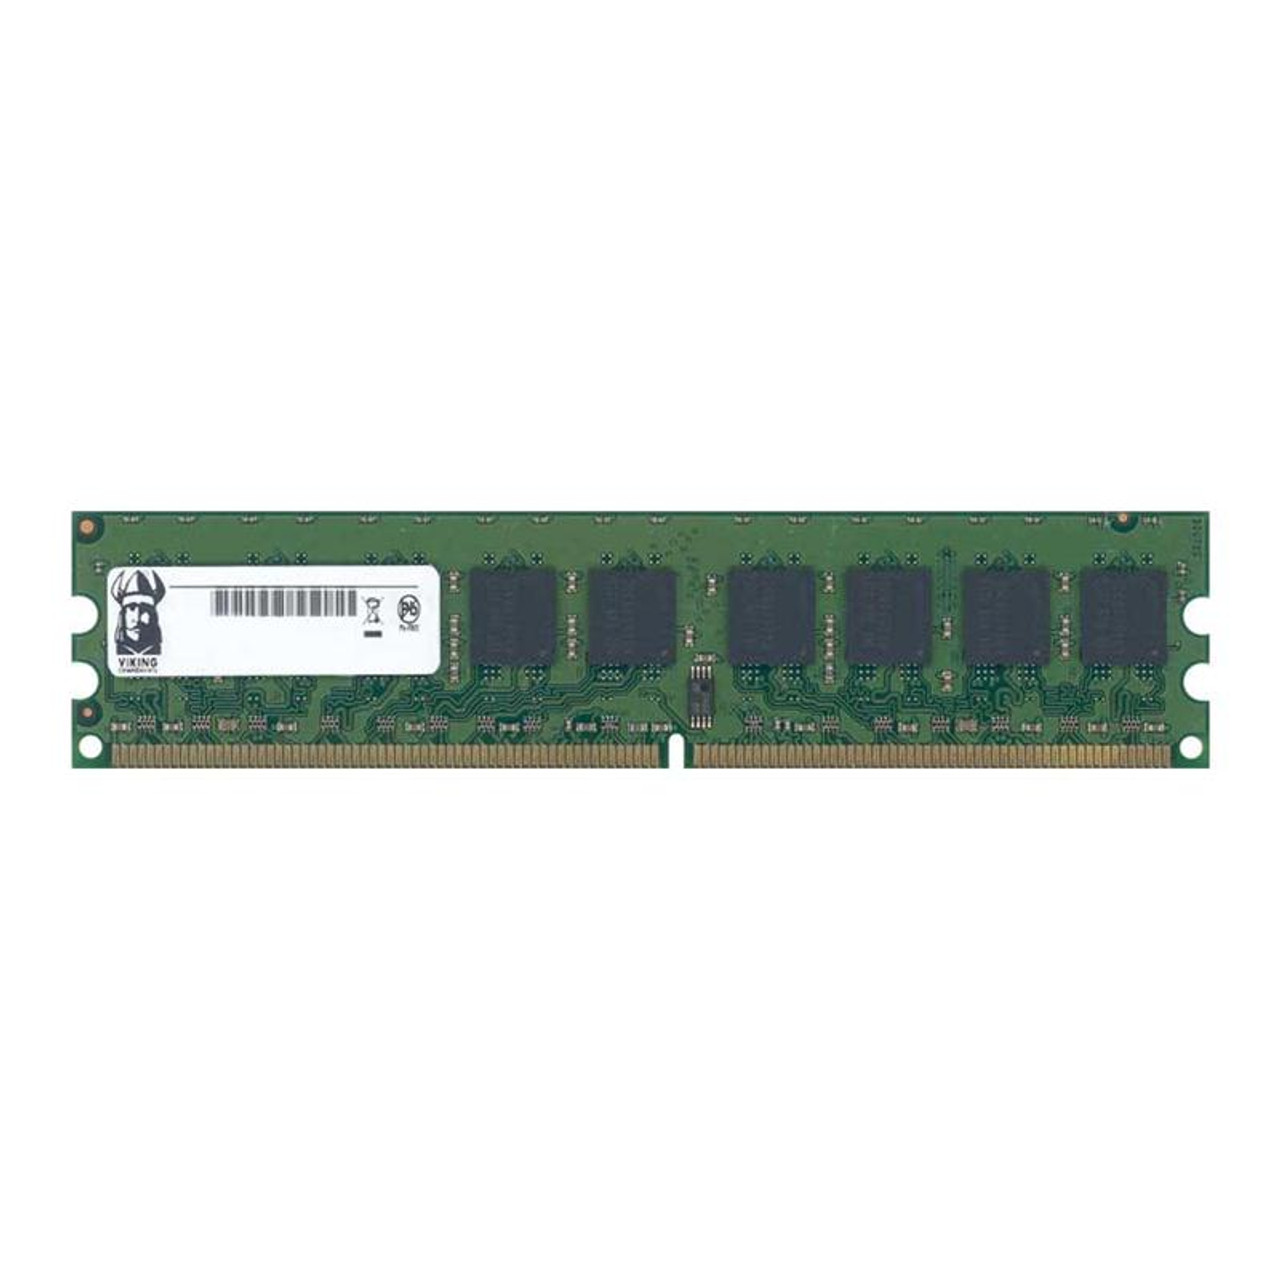 GW4200DDR/256 Viking 256MB PC2-4200 DDR2-533MHz non-ECC Unbuffered CL4 240-Pin DIMM Memory Module